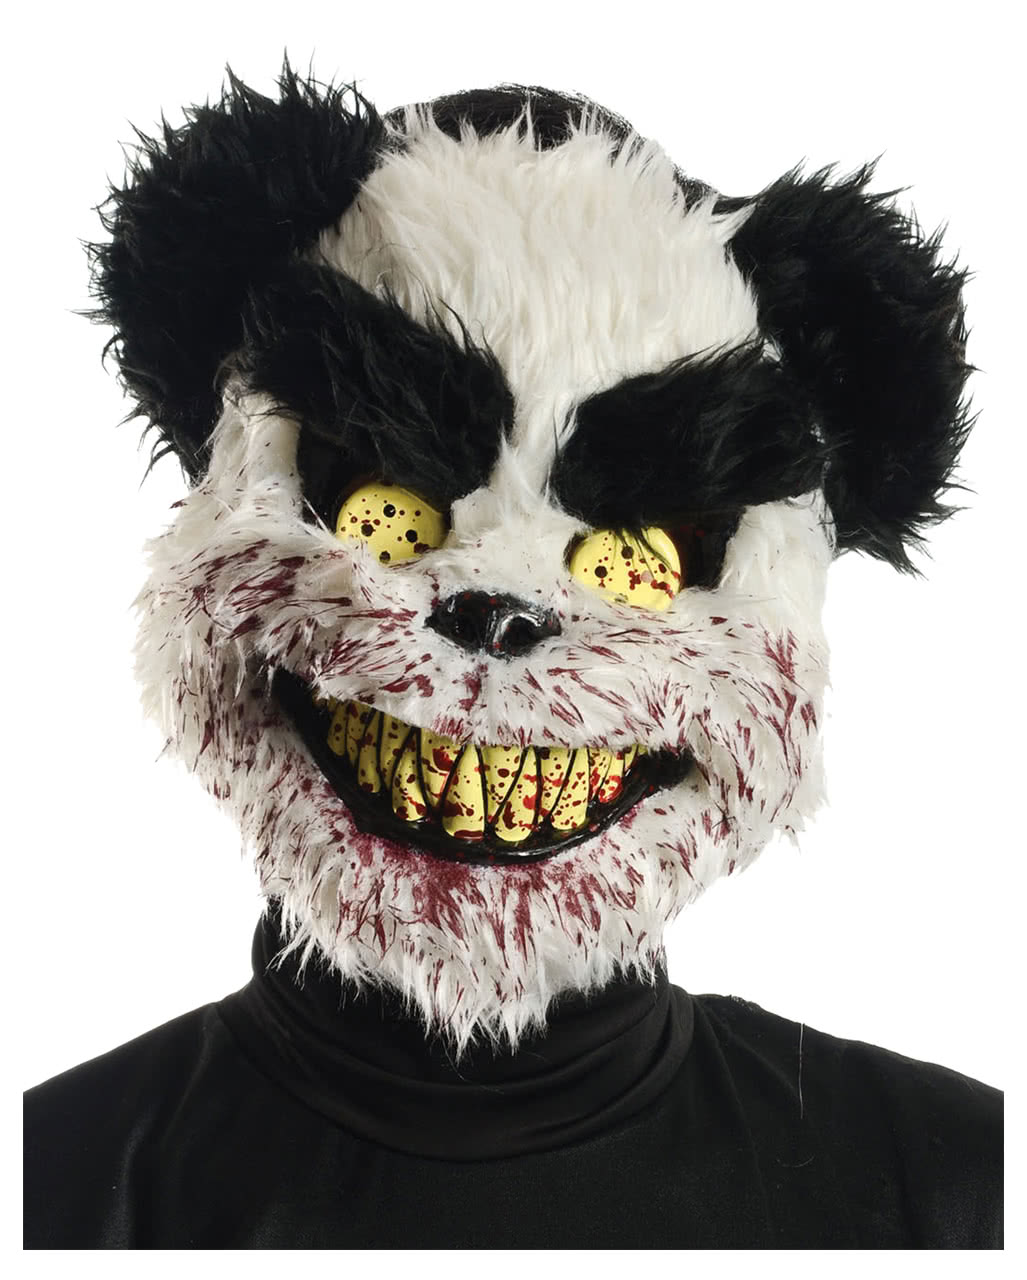 https://inst-1.cdn.shockers.de/hs_cdn/out/pictures/master/product/1/zombie-panda-maske--zombie-teddybaer-maske--halloween-maske--28026.jpg